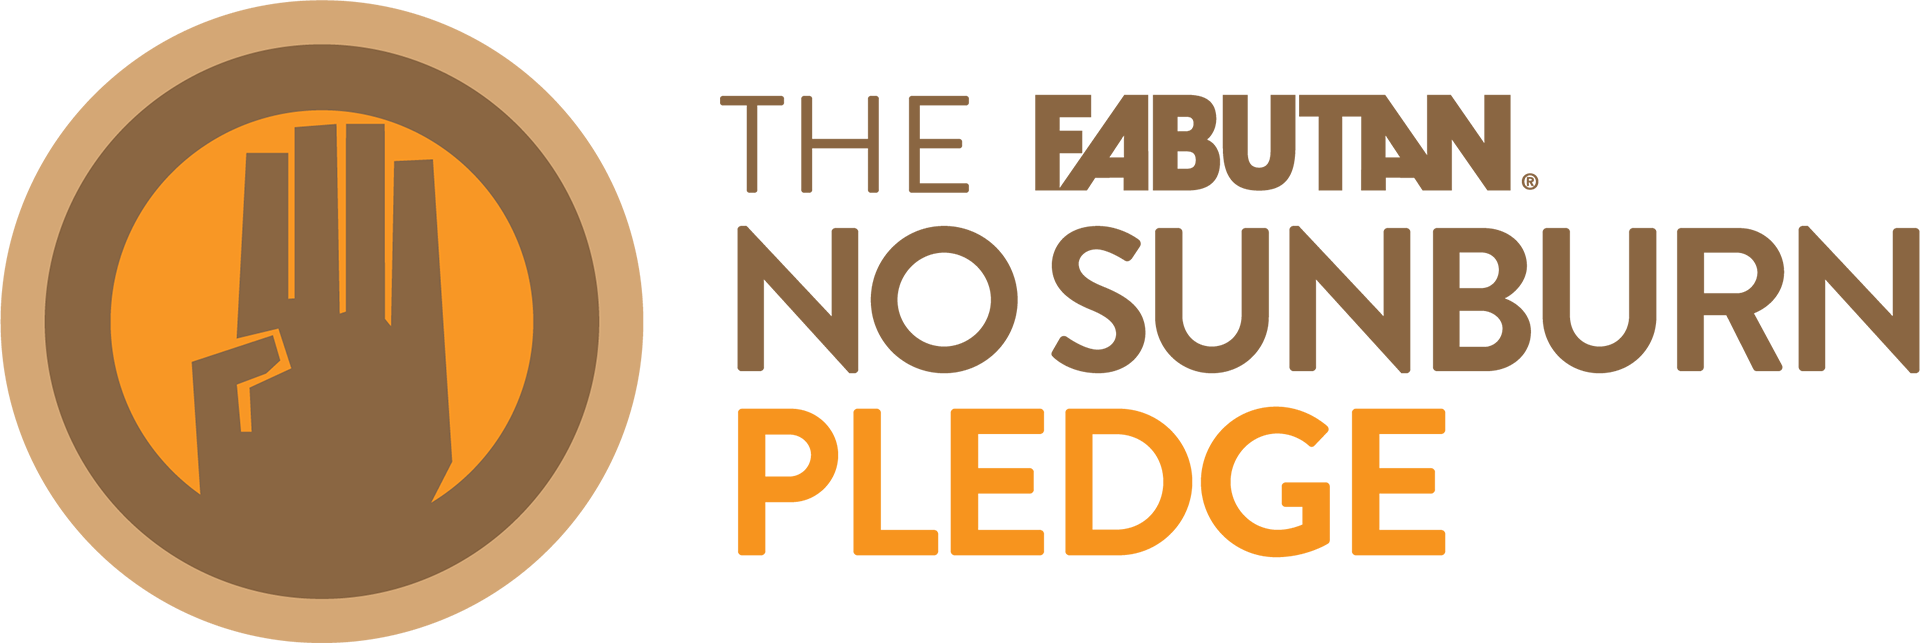 The FABUTAN No Sunburn Pledge